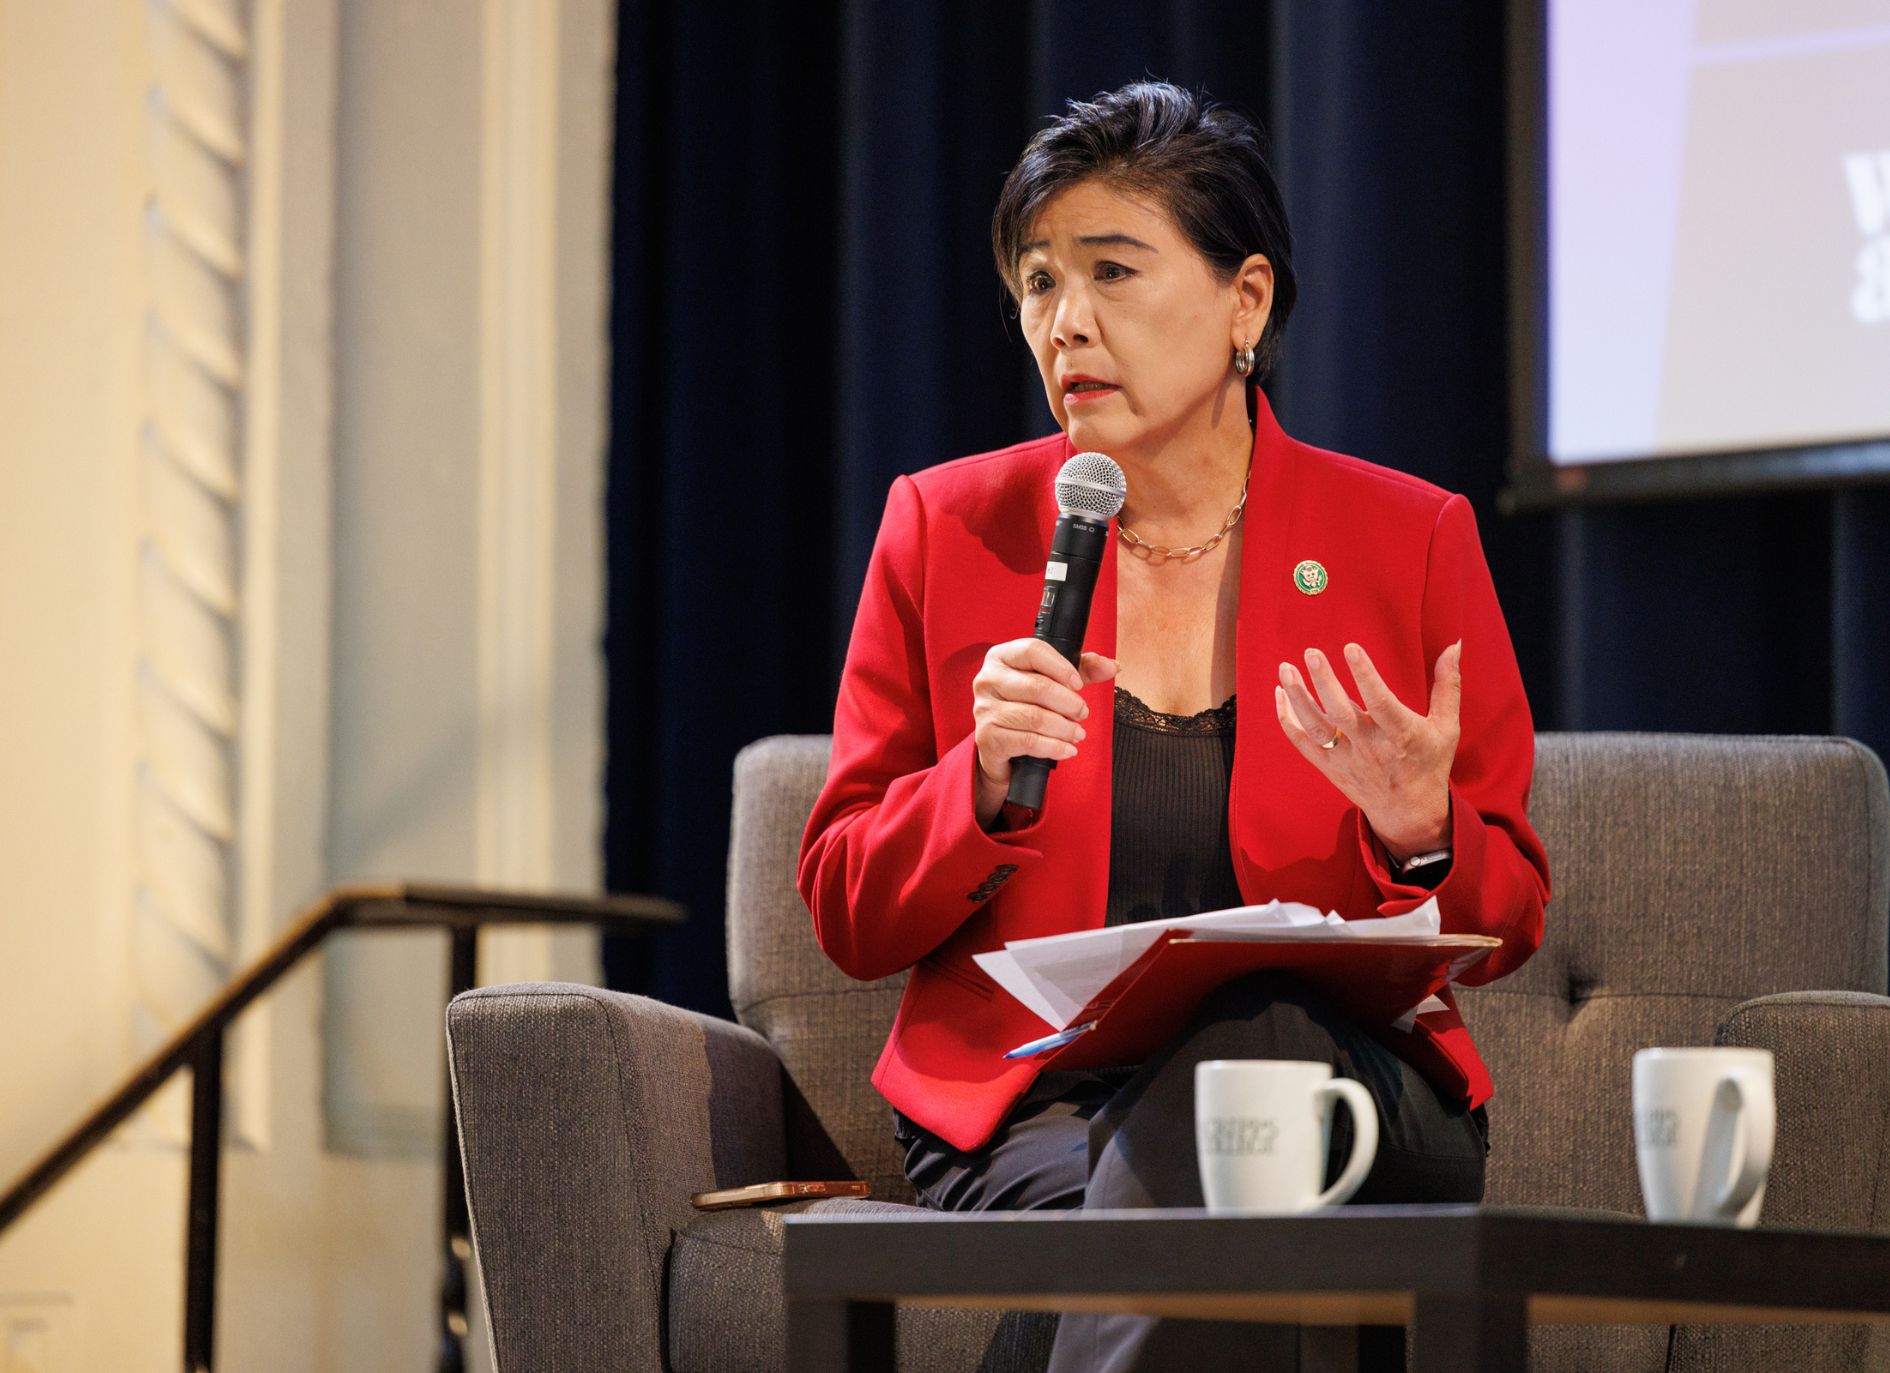 Representative Judy Chu speaks at Scripps College